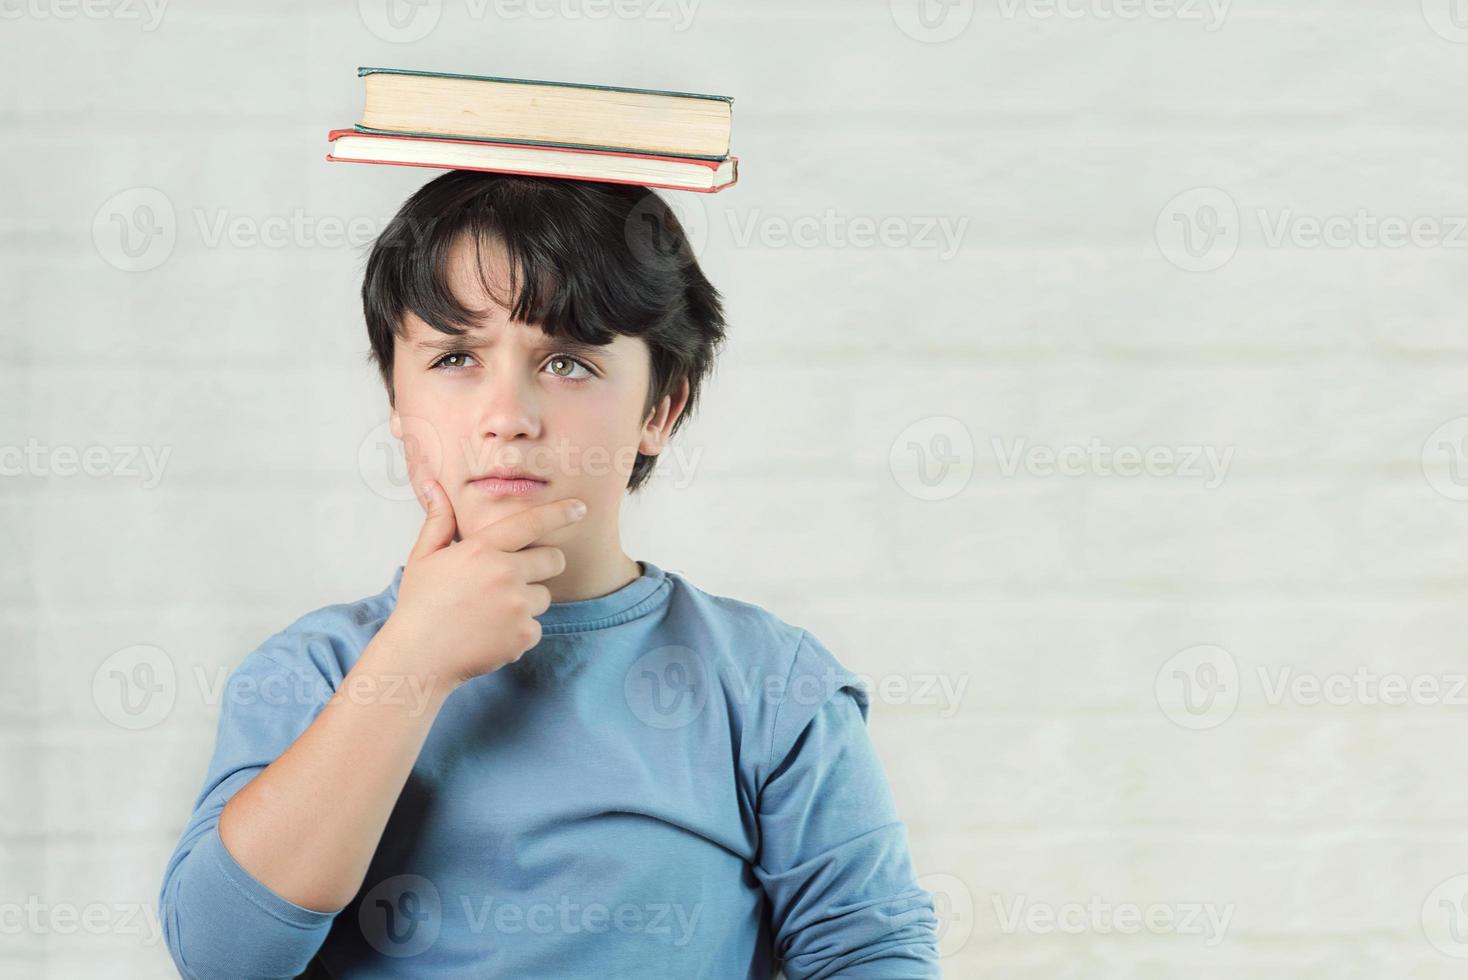 nachdenkliches Kind mit Büchern auf dem Kopf foto